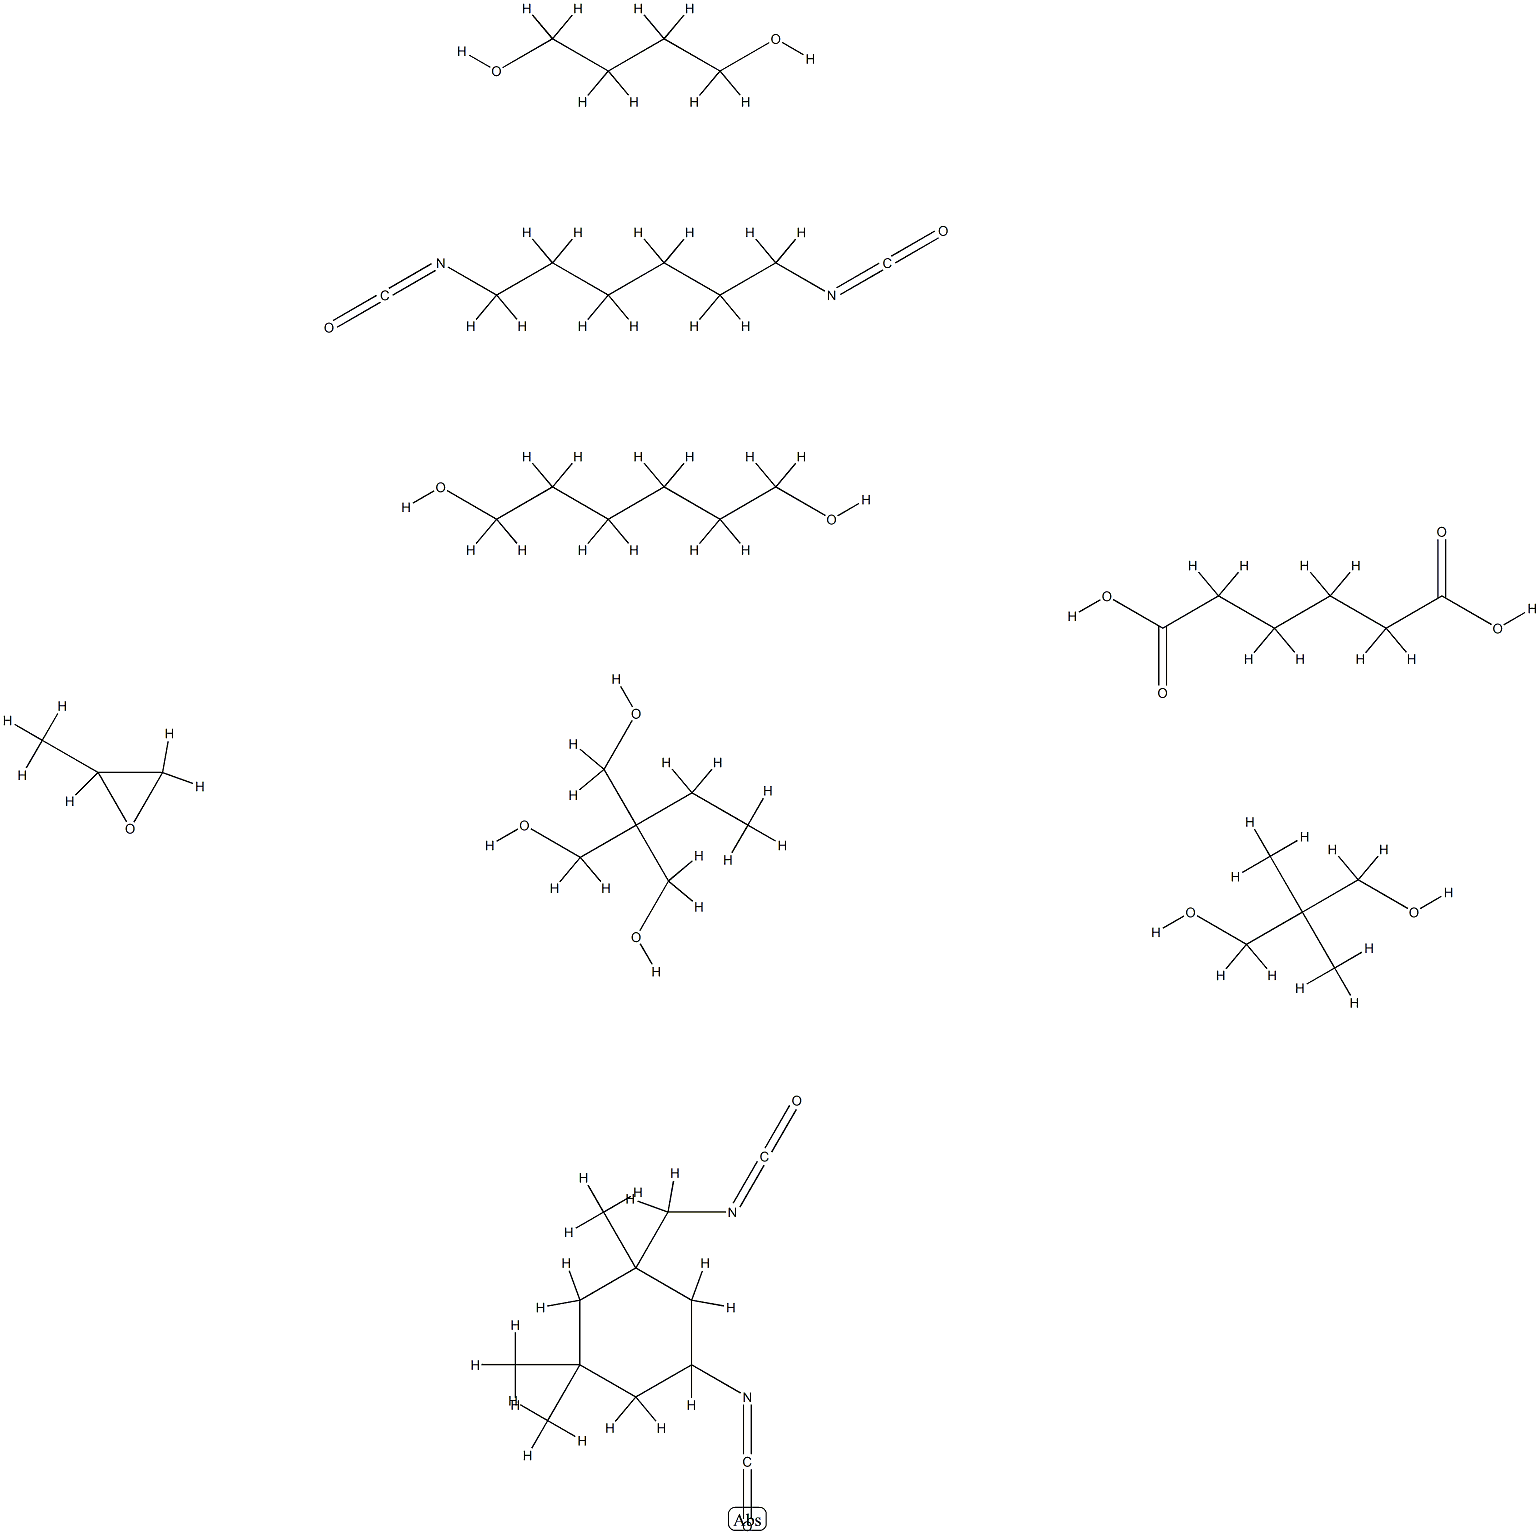 헥산디오산,1,4-부탄디올중합체,1,6-디이소시아나토헥산,2,2-디메틸-1,3-프로판디올,2-에틸-2-(히드록시메틸)-1,3-프로판디올,1,6-헥산디올,5-이소시아네이토-1-(이소시아네이토메틸)-1,3,3-트리메틸시클로헥산및메틸옥시란